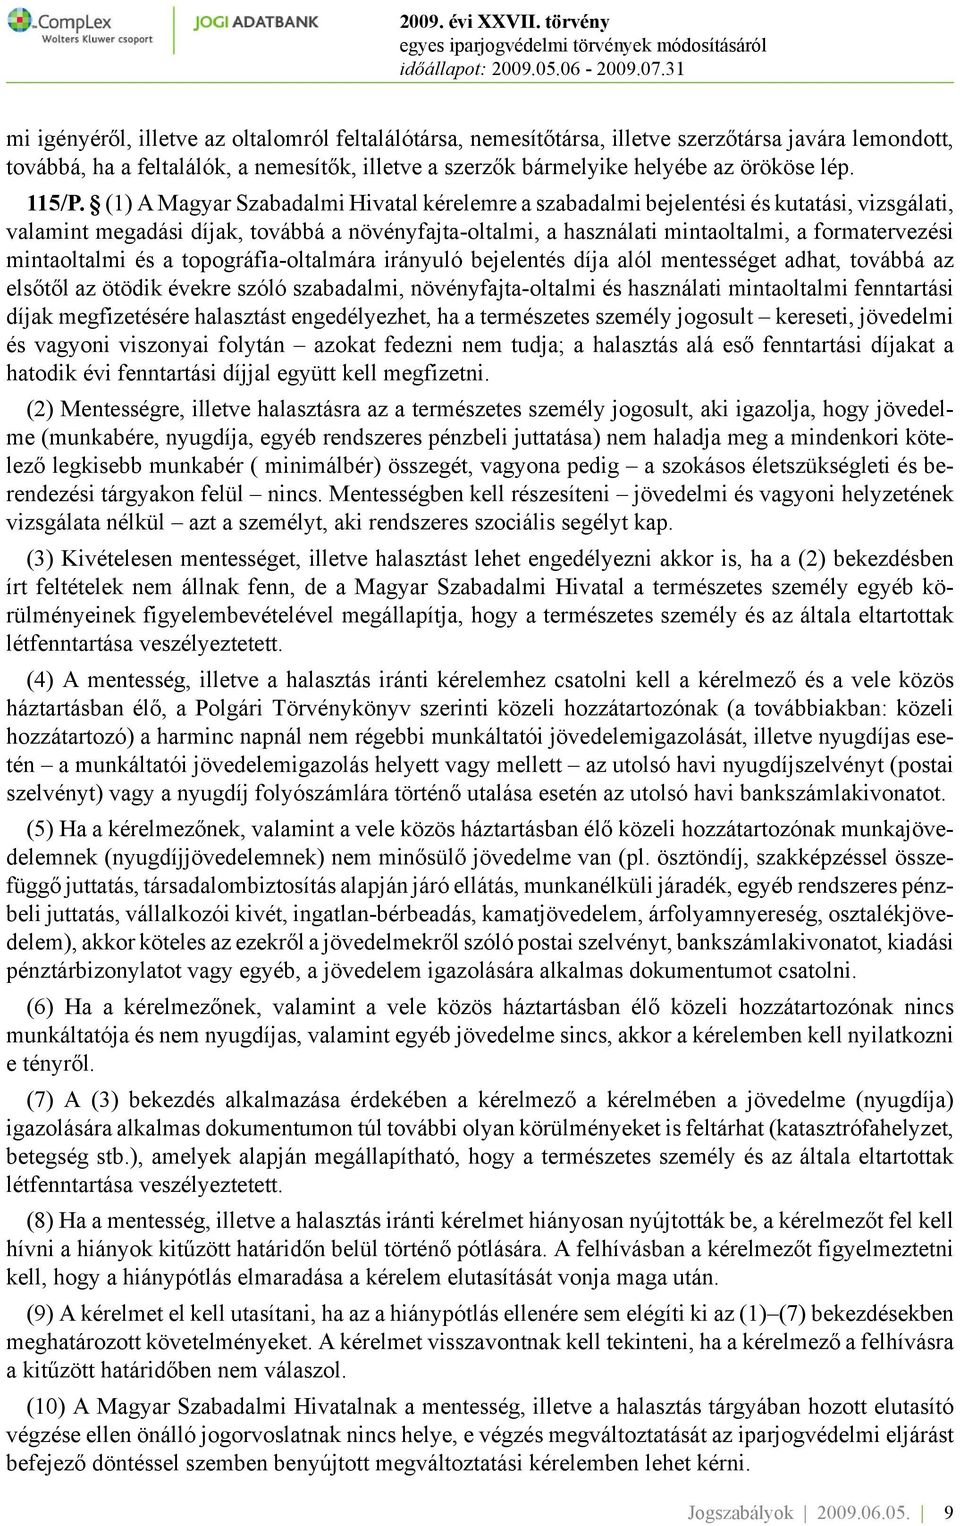 (1) A Magyar Szabadalmi Hivatal kérelemre a szabadalmi bejelentési és kutatási, vizsgálati, valamint megadási díjak, továbbá a növényfajta-oltalmi, a használati mintaoltalmi, a formatervezési